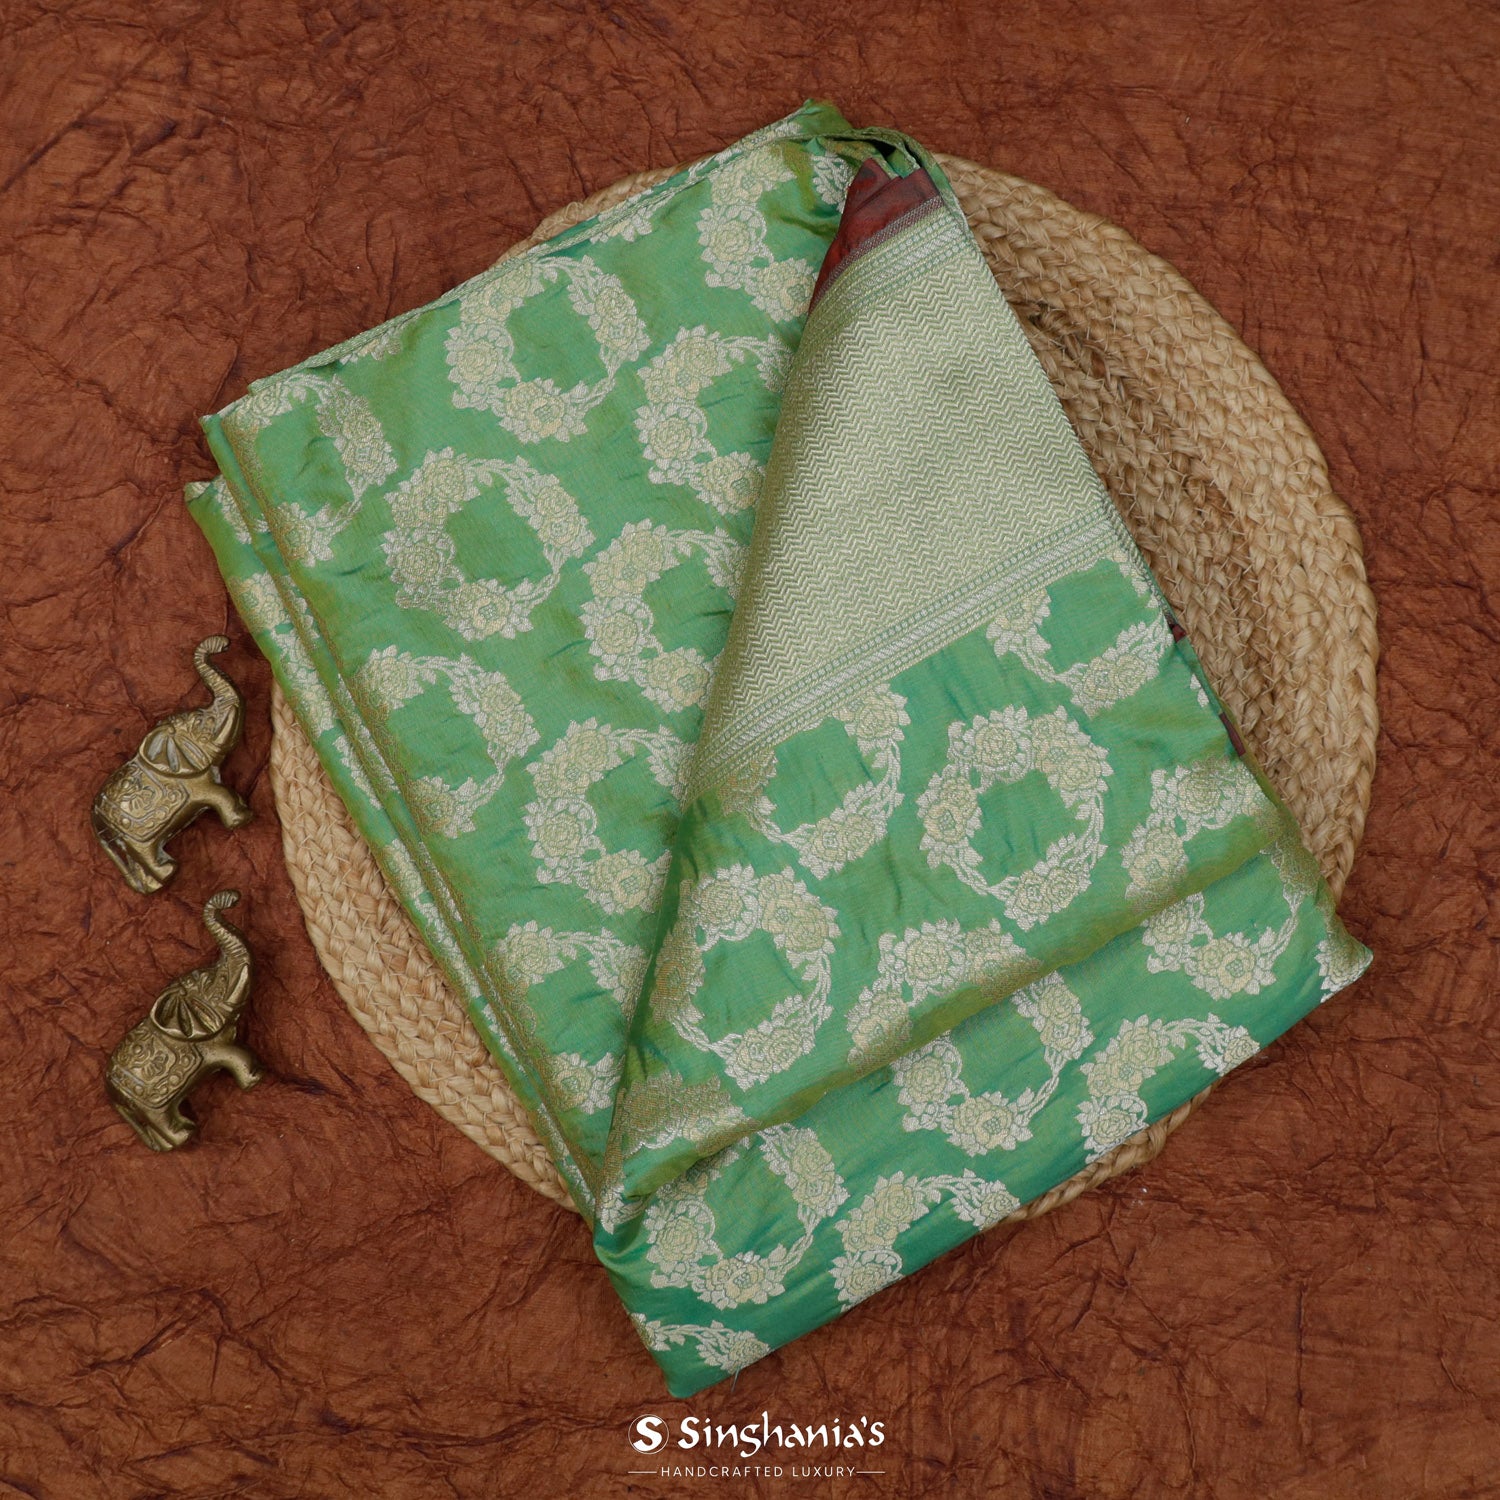 Medium Sea Green Banarasi Silk Saree With Floral Buttis Pattern